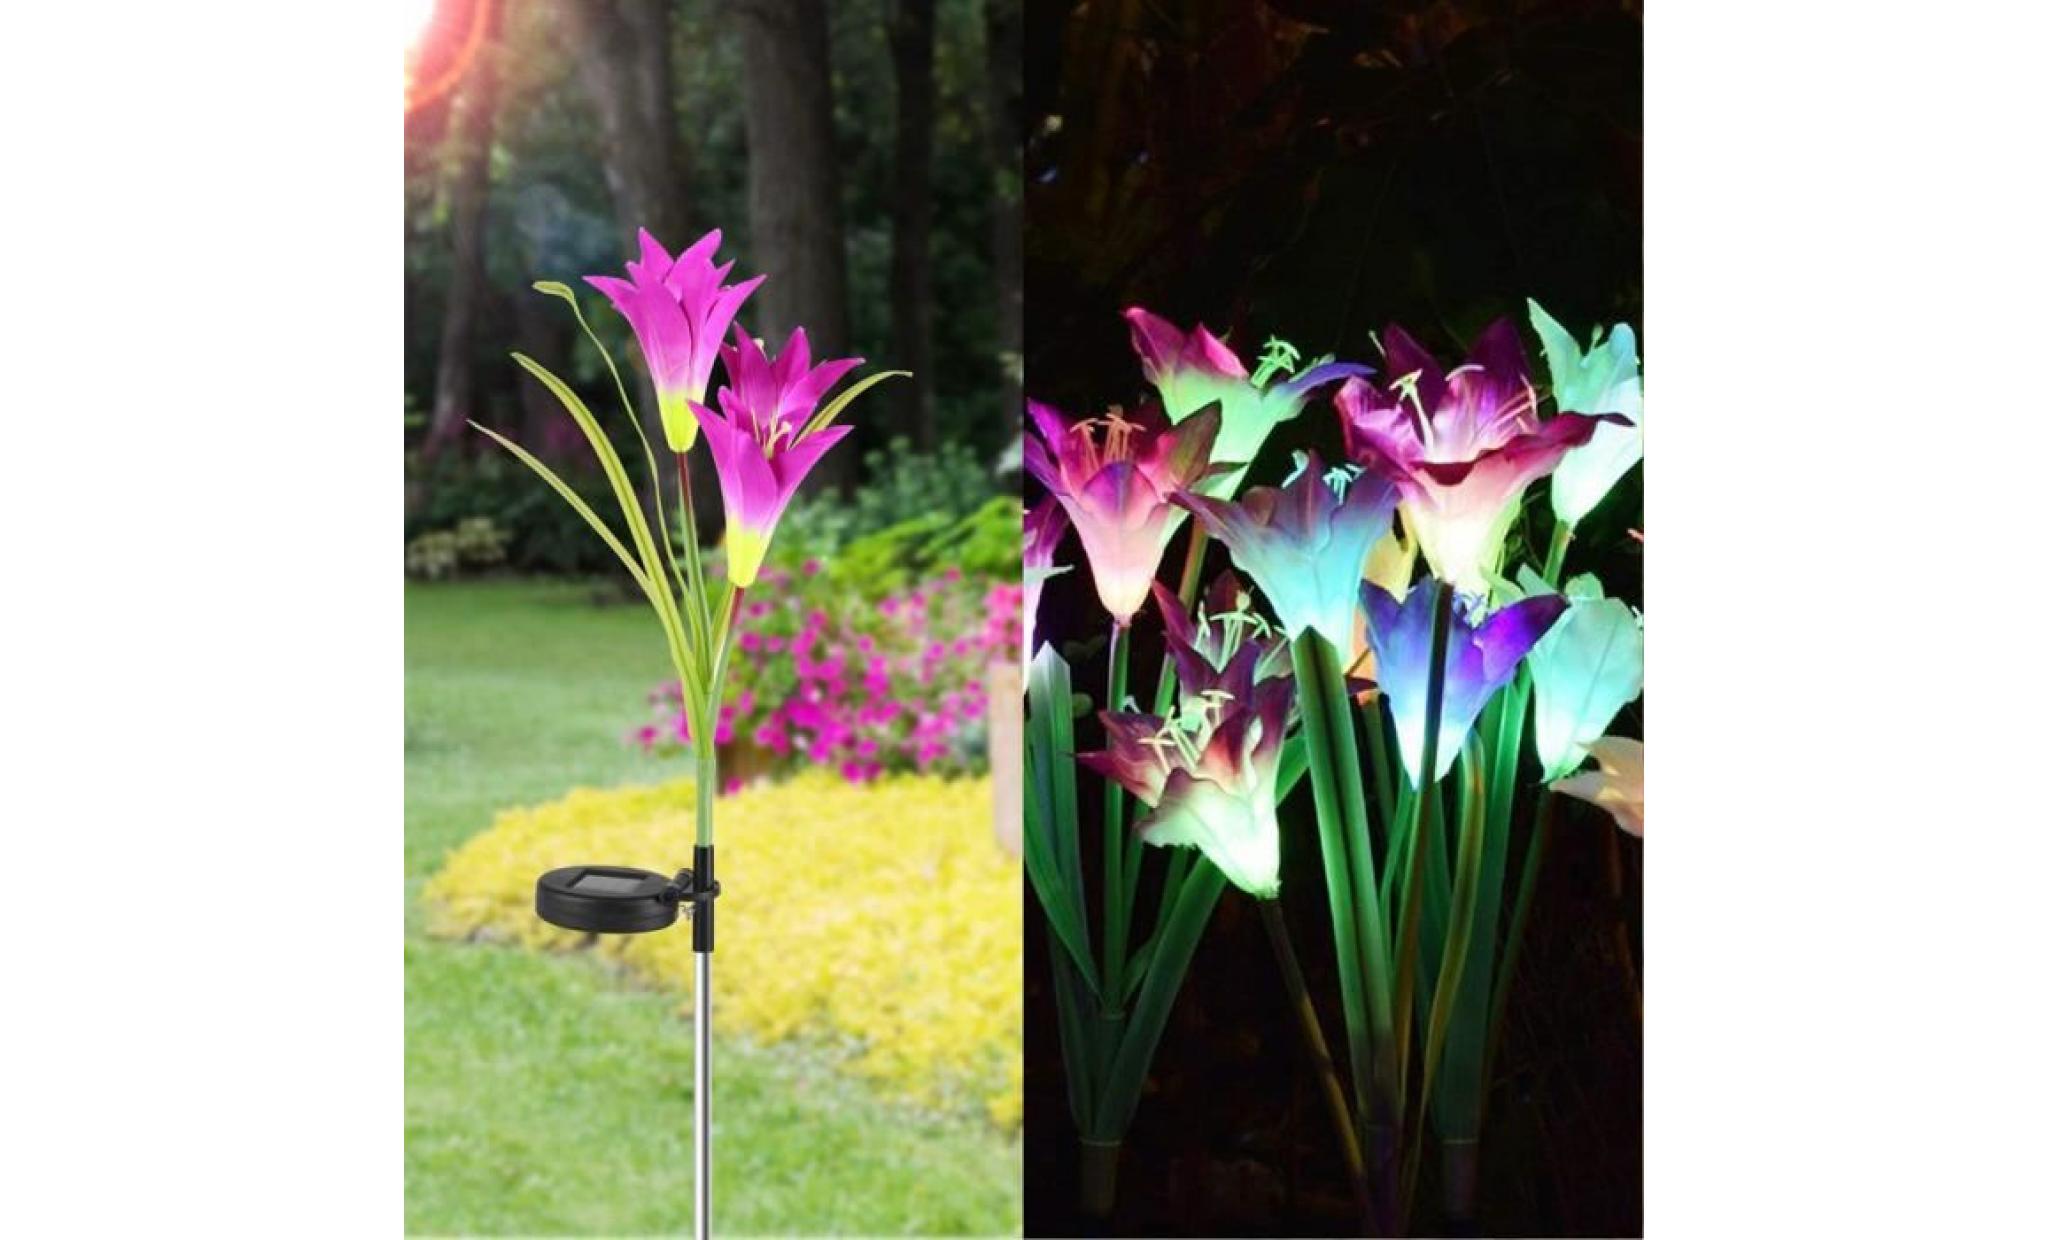 borne solaire 2 pcs fleur de lys jardin solaire actionné pieu lumières lumières fleurs artificielles led lumière #pa 130